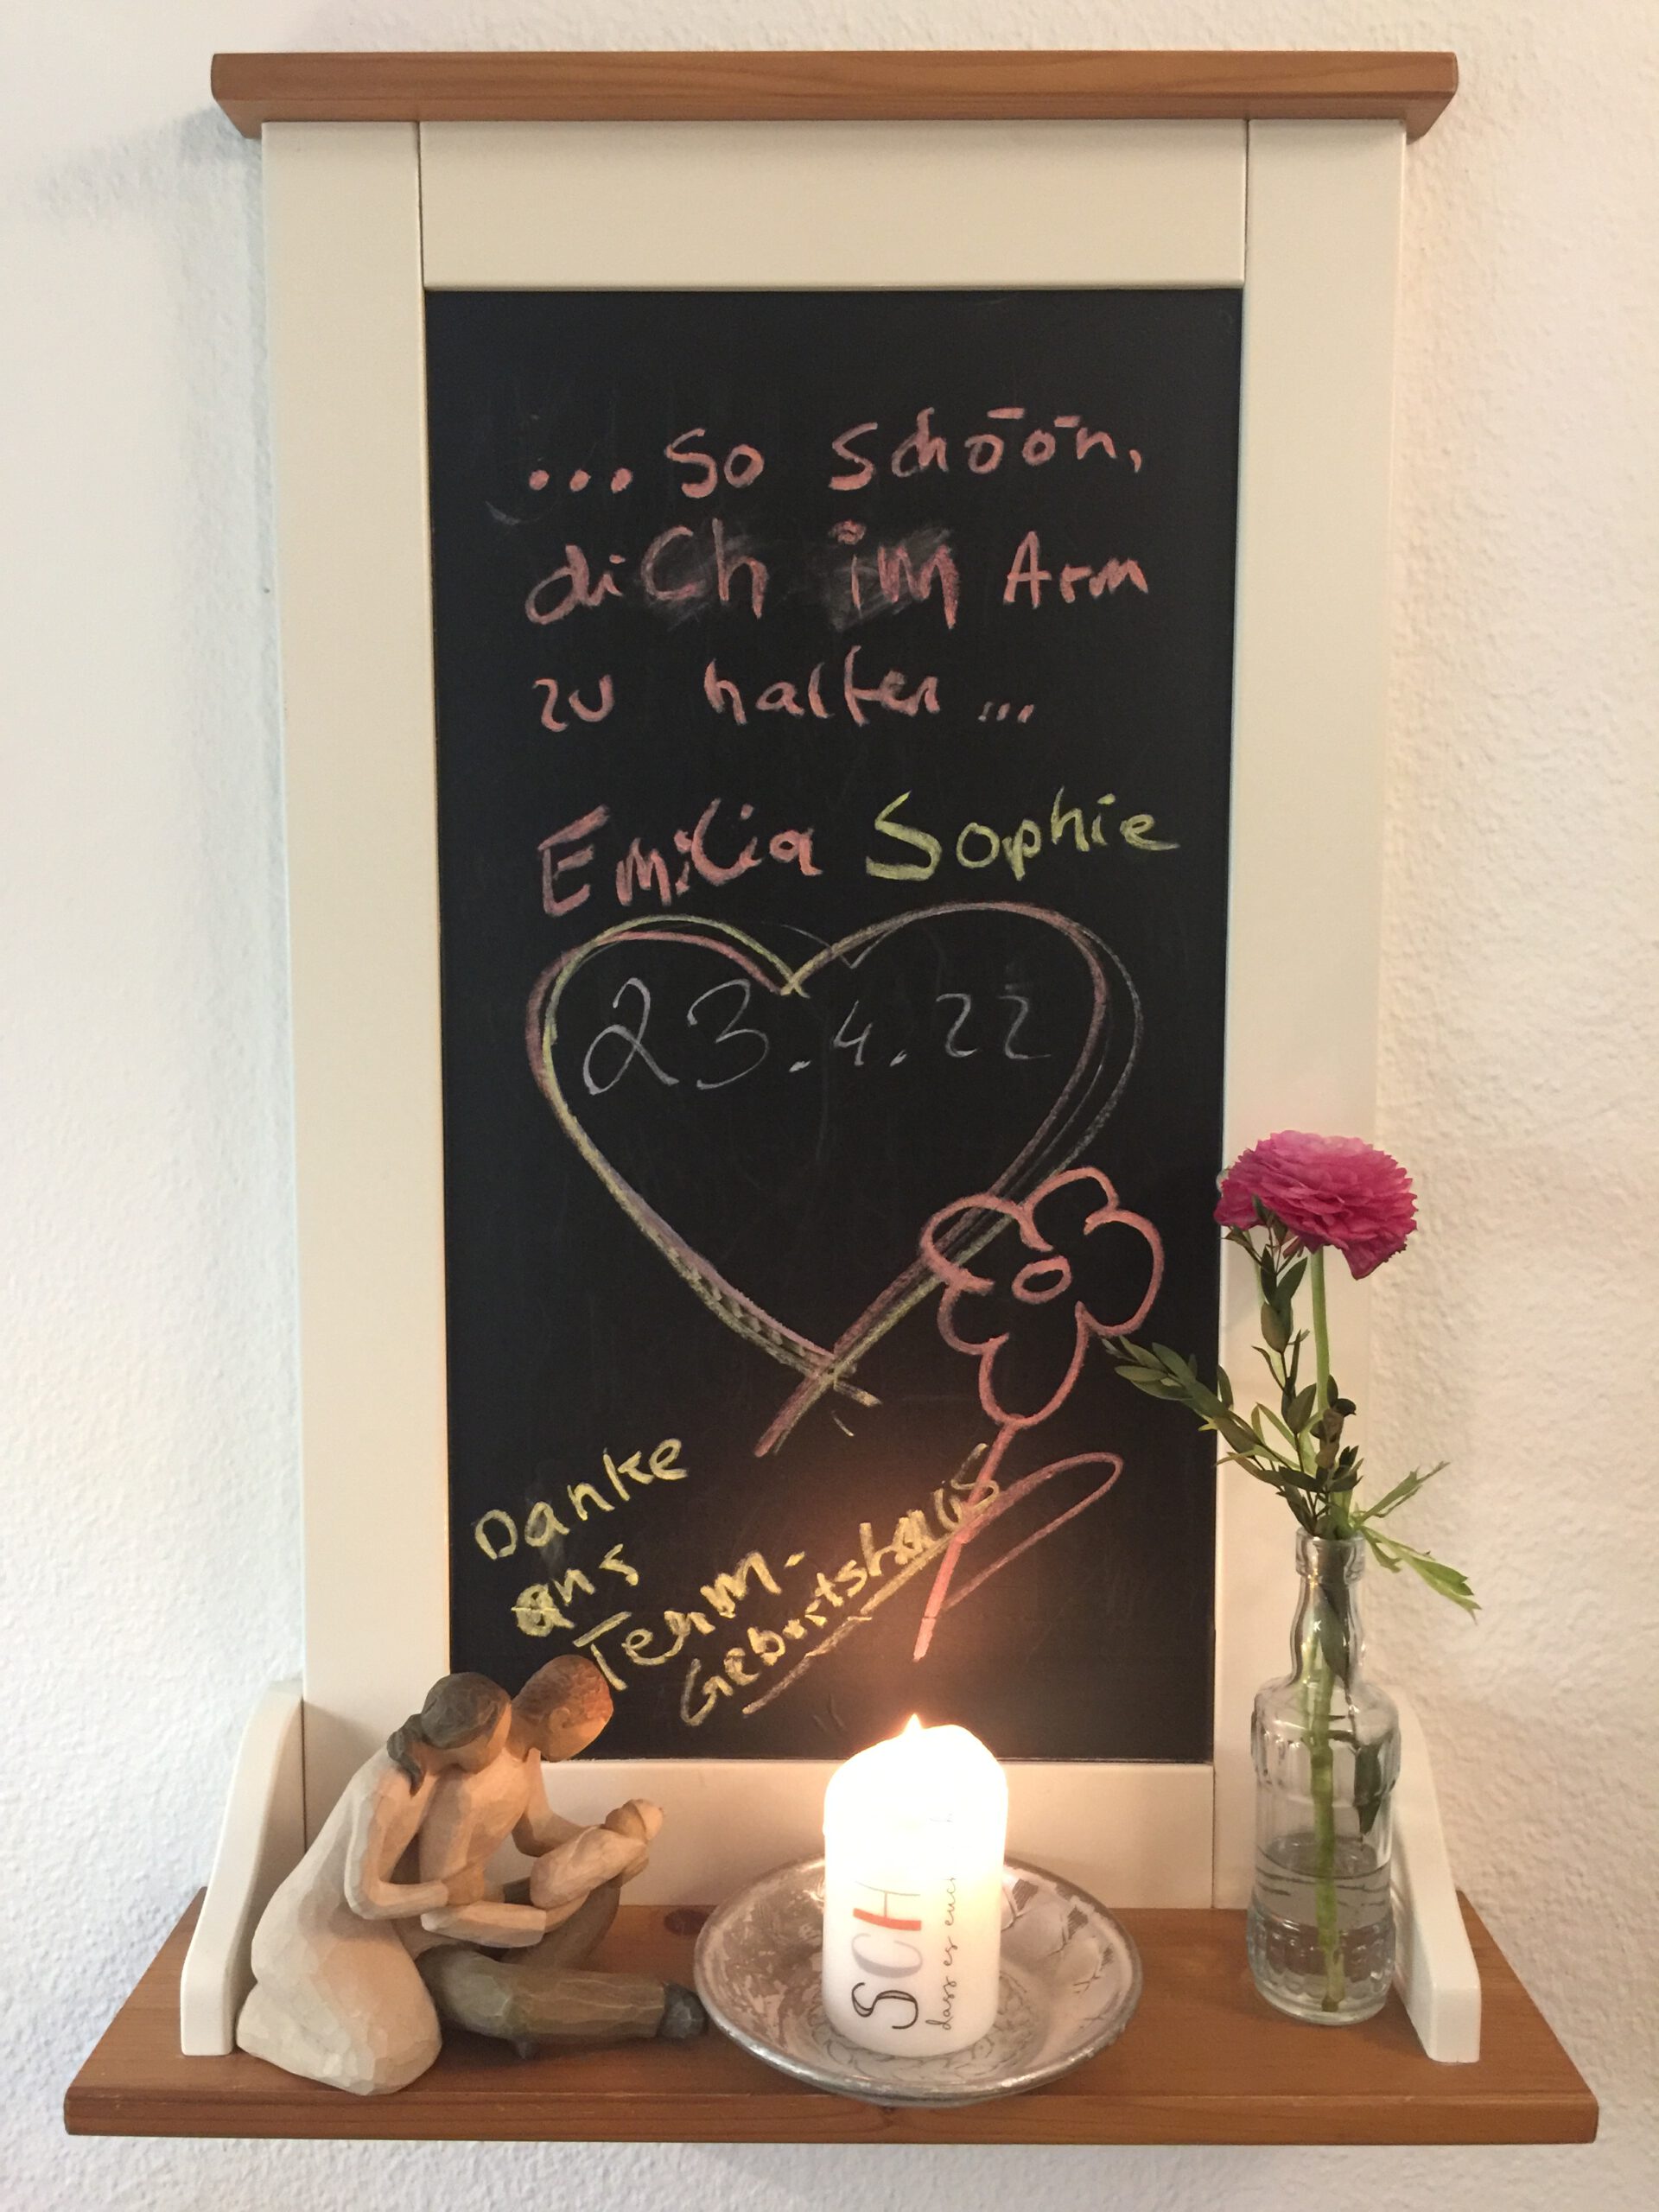 23.04.22 Emilia Sophie